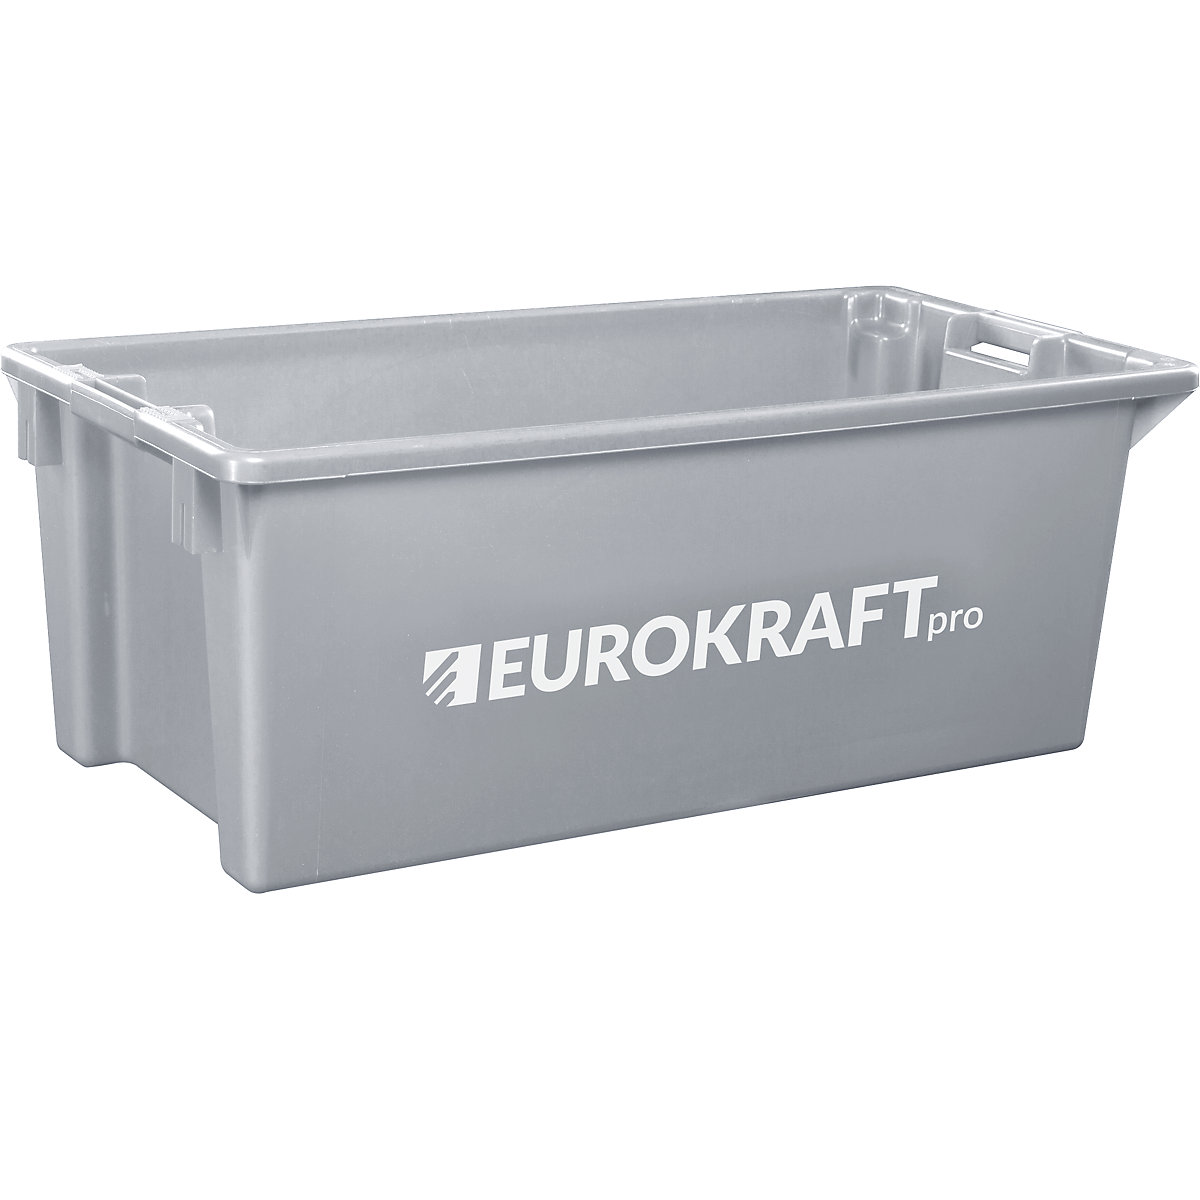 EUROKRAFTpro – Otočná stohovací nádoba z polypropylenu vhodného pro potraviny, obsah 13 litrů, bal.j. 4 ks, stěny a dno plné, šedá